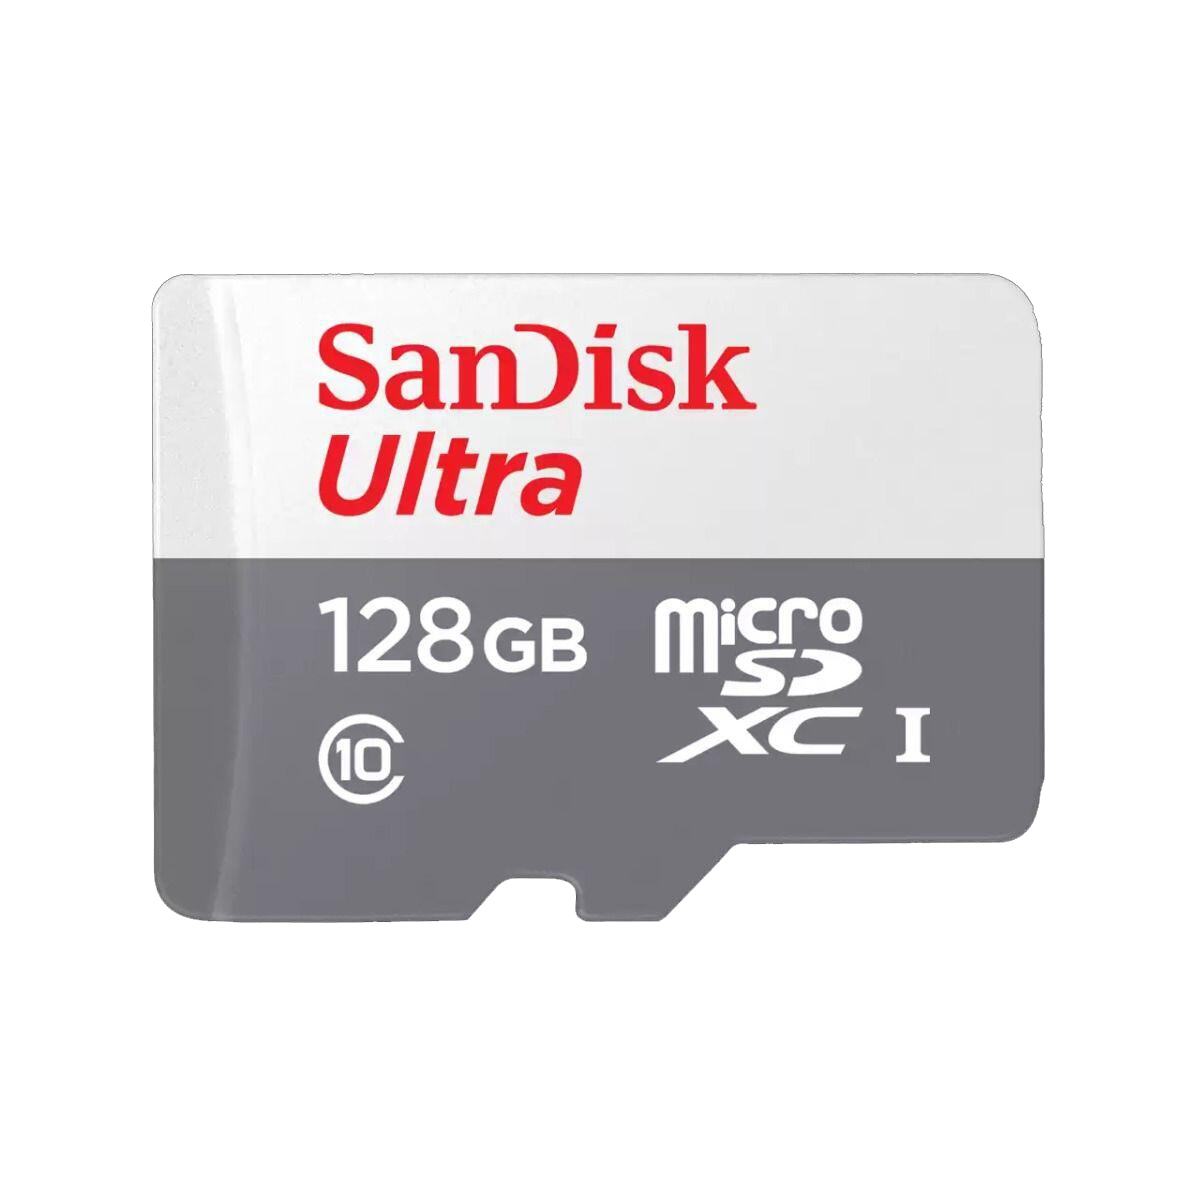 بطاقة ذاكرة ميكرو SDXC UHS-I سانديسك الترا، 128 جيجا - SDSQUNR-128G-GN3MA